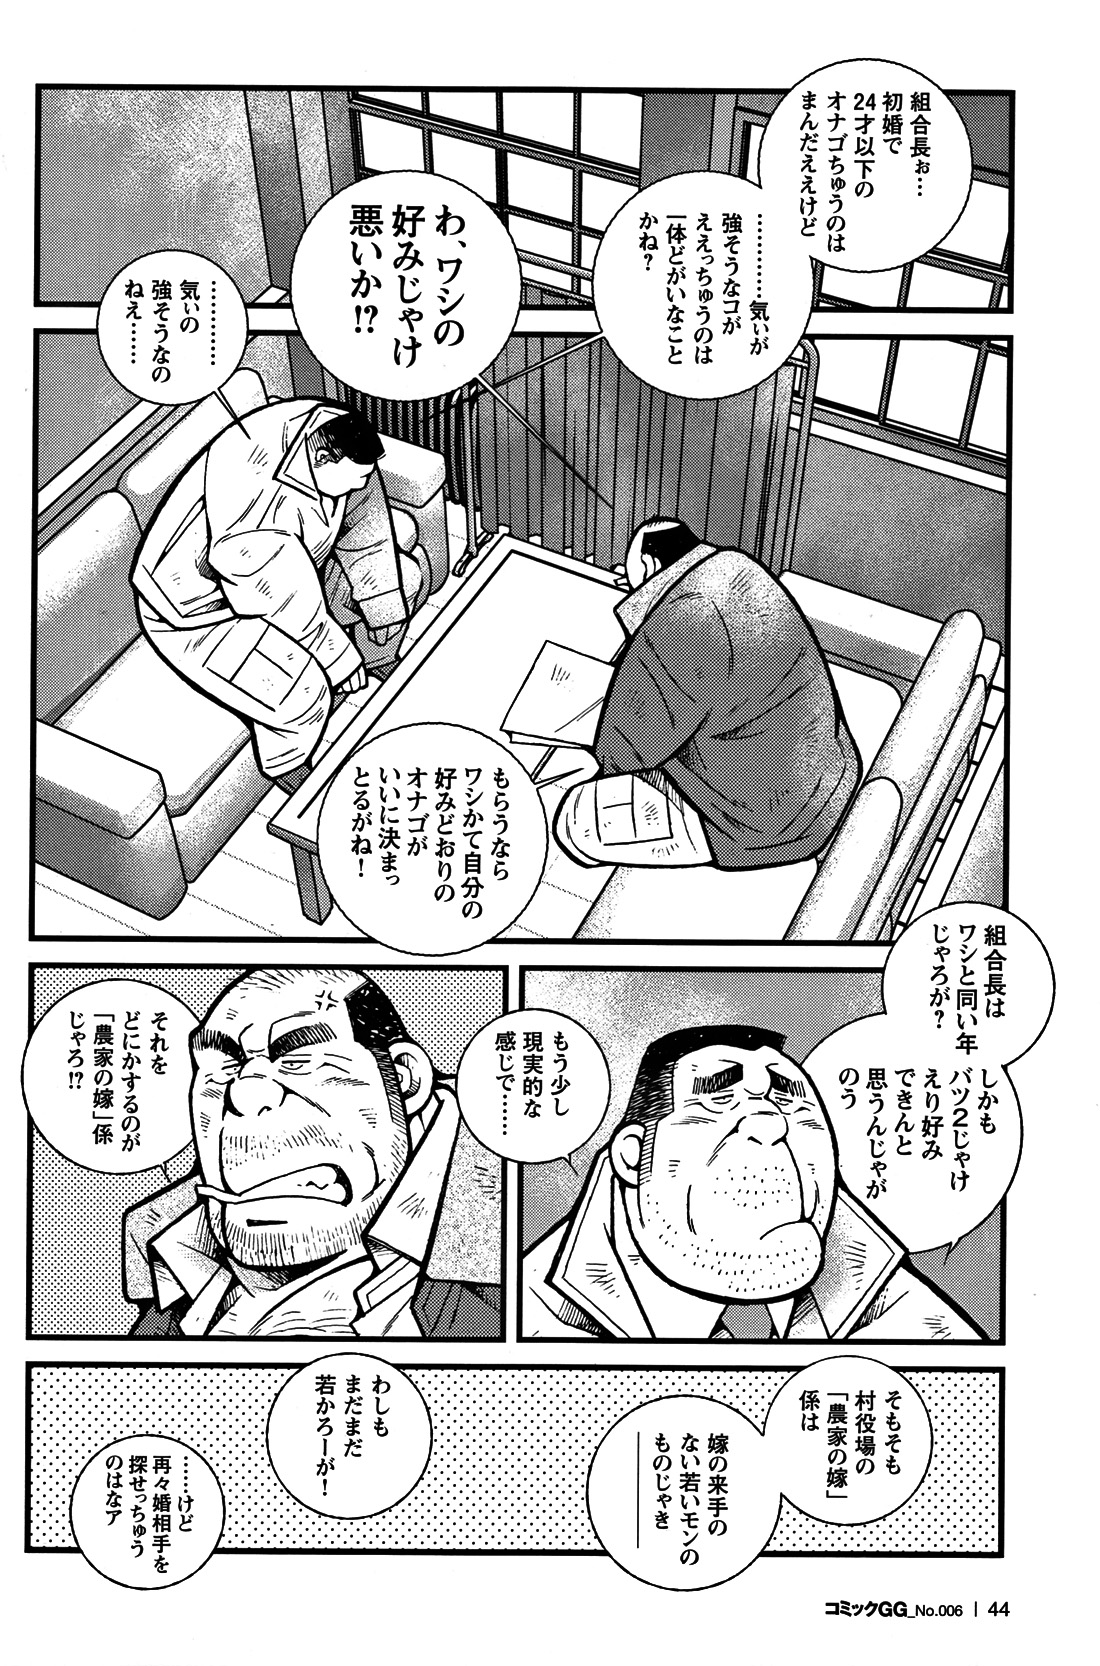 Comic G-men Gaho No. 06 Nikutai Roudousha page 39 full